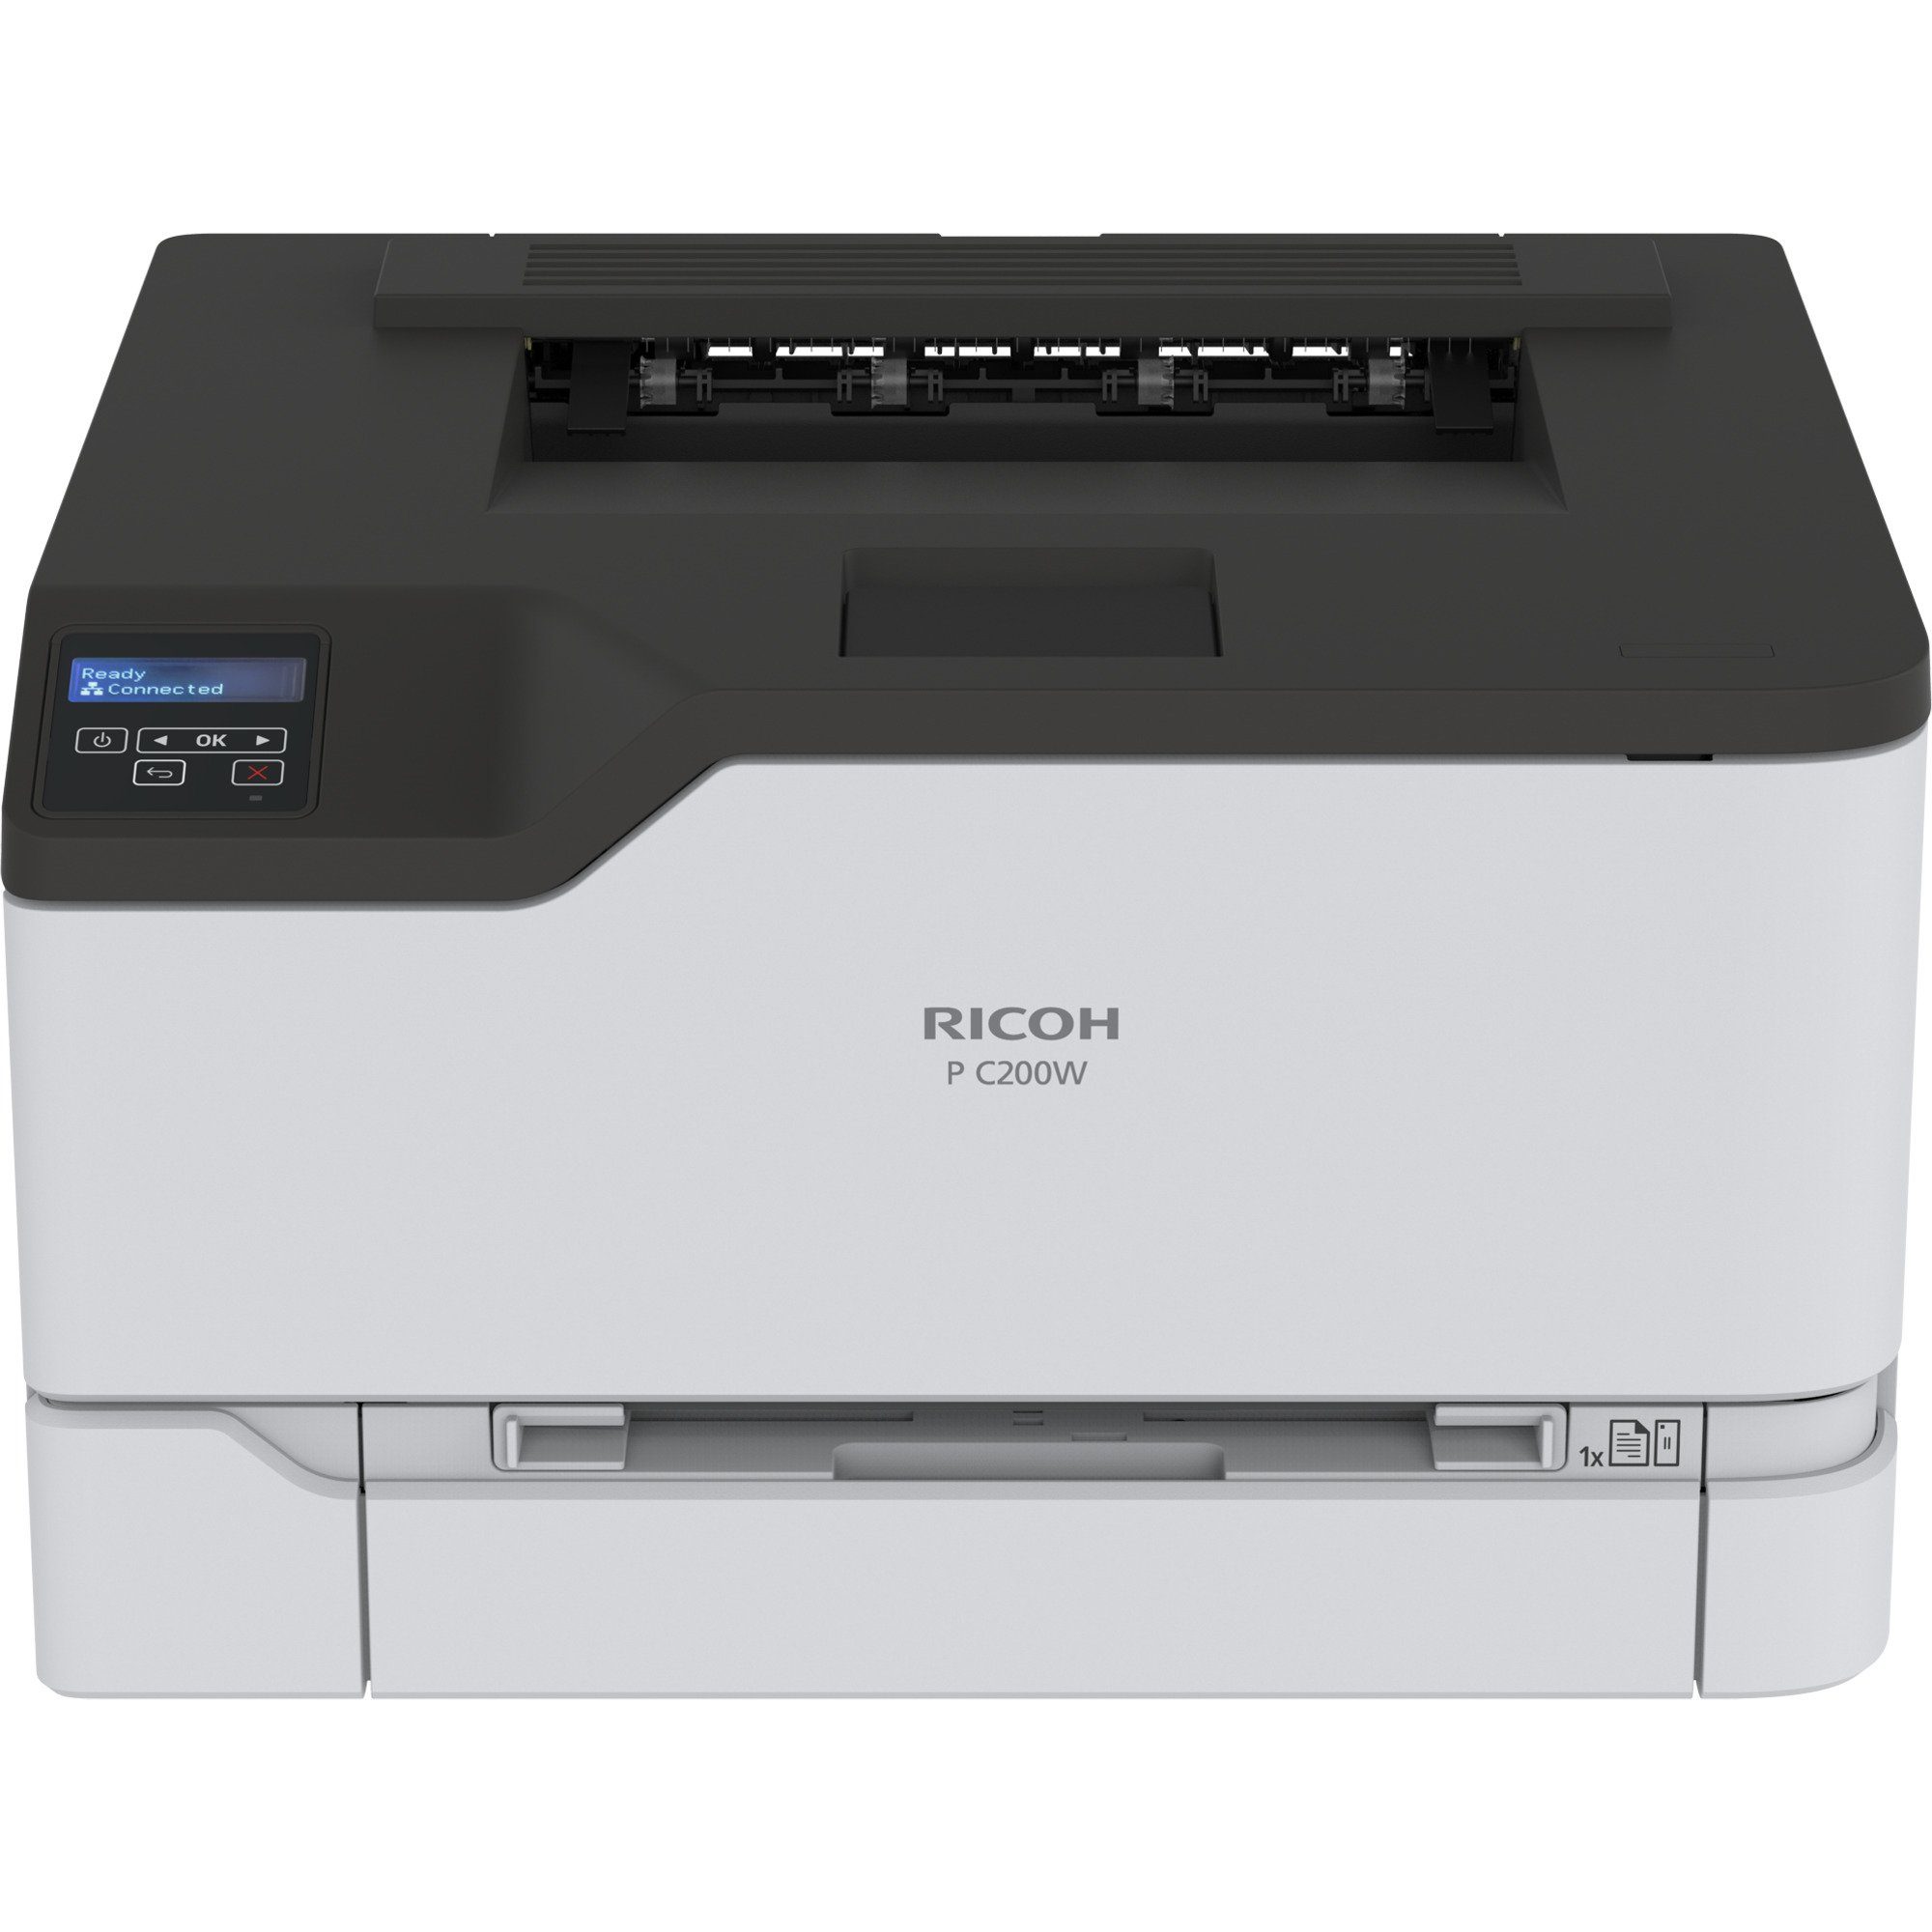 Ricoh P C200W Багатофункціональний принтер